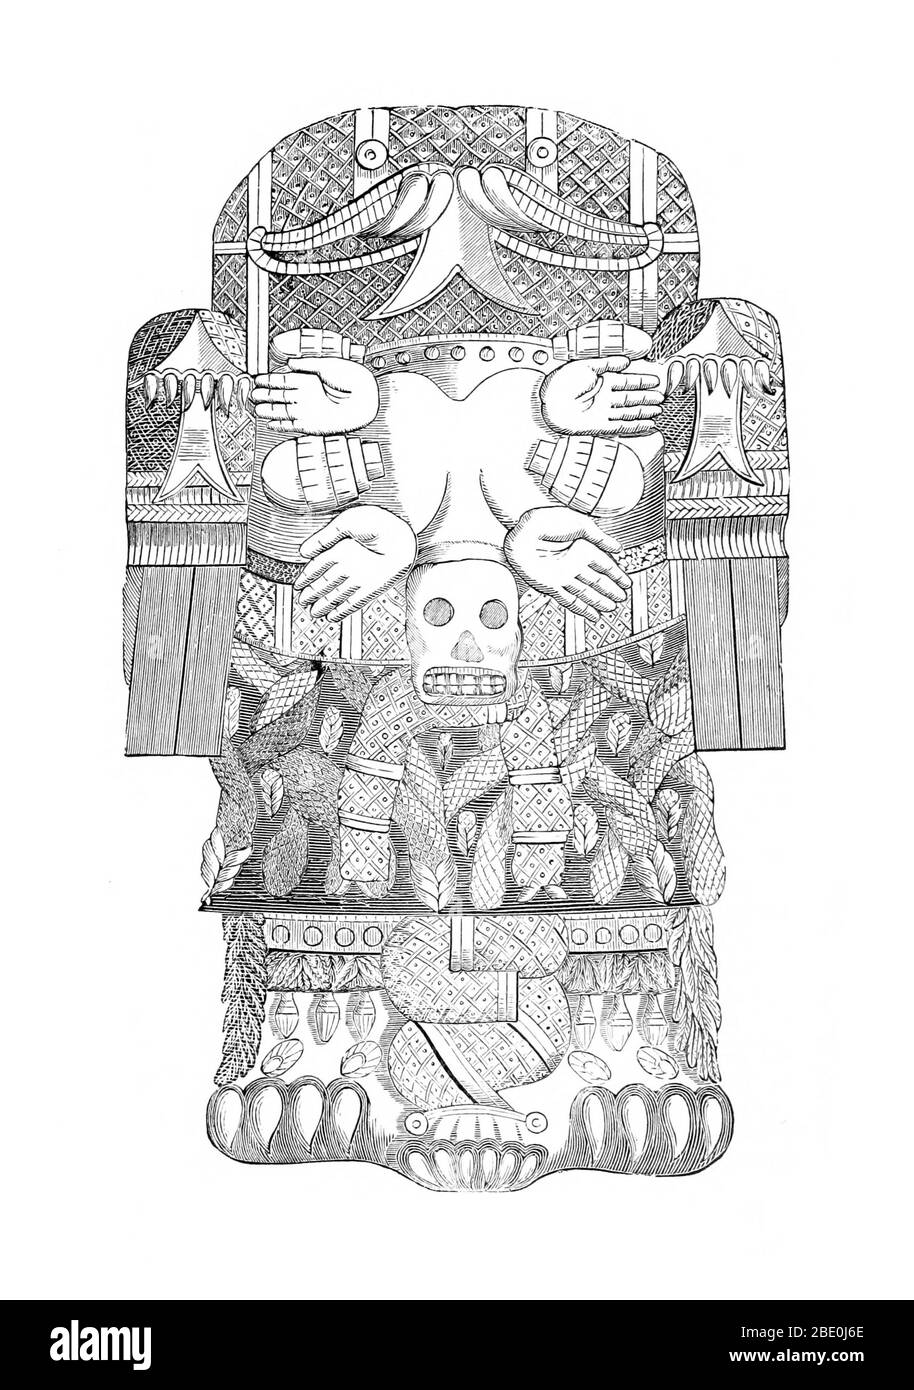 Nella mitologia azteca, Cihuacoatl era una delle numerose dea della maternità e della fertilità. Cihuacoatl era particolarmente associato alle ostetriche, e ai bagni di sudore dove le ostetriche praticavano. È abbinata a Quilaztli ed è stata considerata una protettrice del popolo della Chalmeca e patrona della città di Culhuacan. Aiutò Quetzalcoatl a creare l'attuale razza dell'umanità macinando ossa delle epoche precedenti e mescolandola con il suo sangue. Spesso viene mostrata come una feroce donna con il cranio che porta le lance e lo scudo di un guerriero. Il parto è stato talvolta paragonato alla guerra e alla t Foto Stock